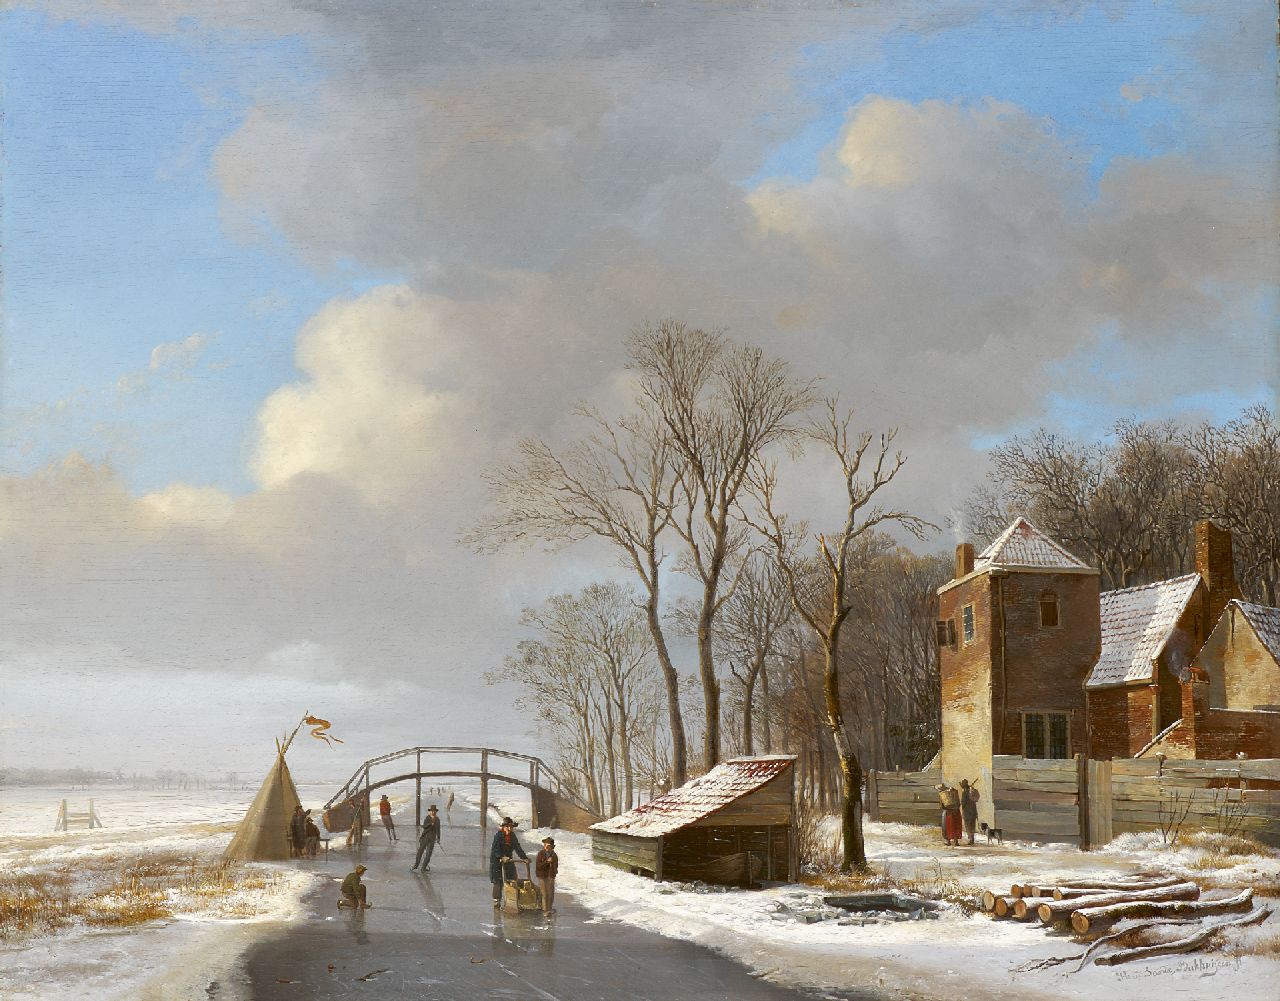 Sande Bakhuyzen H. van de | Hendrikus van de Sande Bakhuyzen, Besneeuwd polderlandschap met schaatsers, olieverf op paneel 40,4 x 51,0 cm, gesigneerd rechtsonder